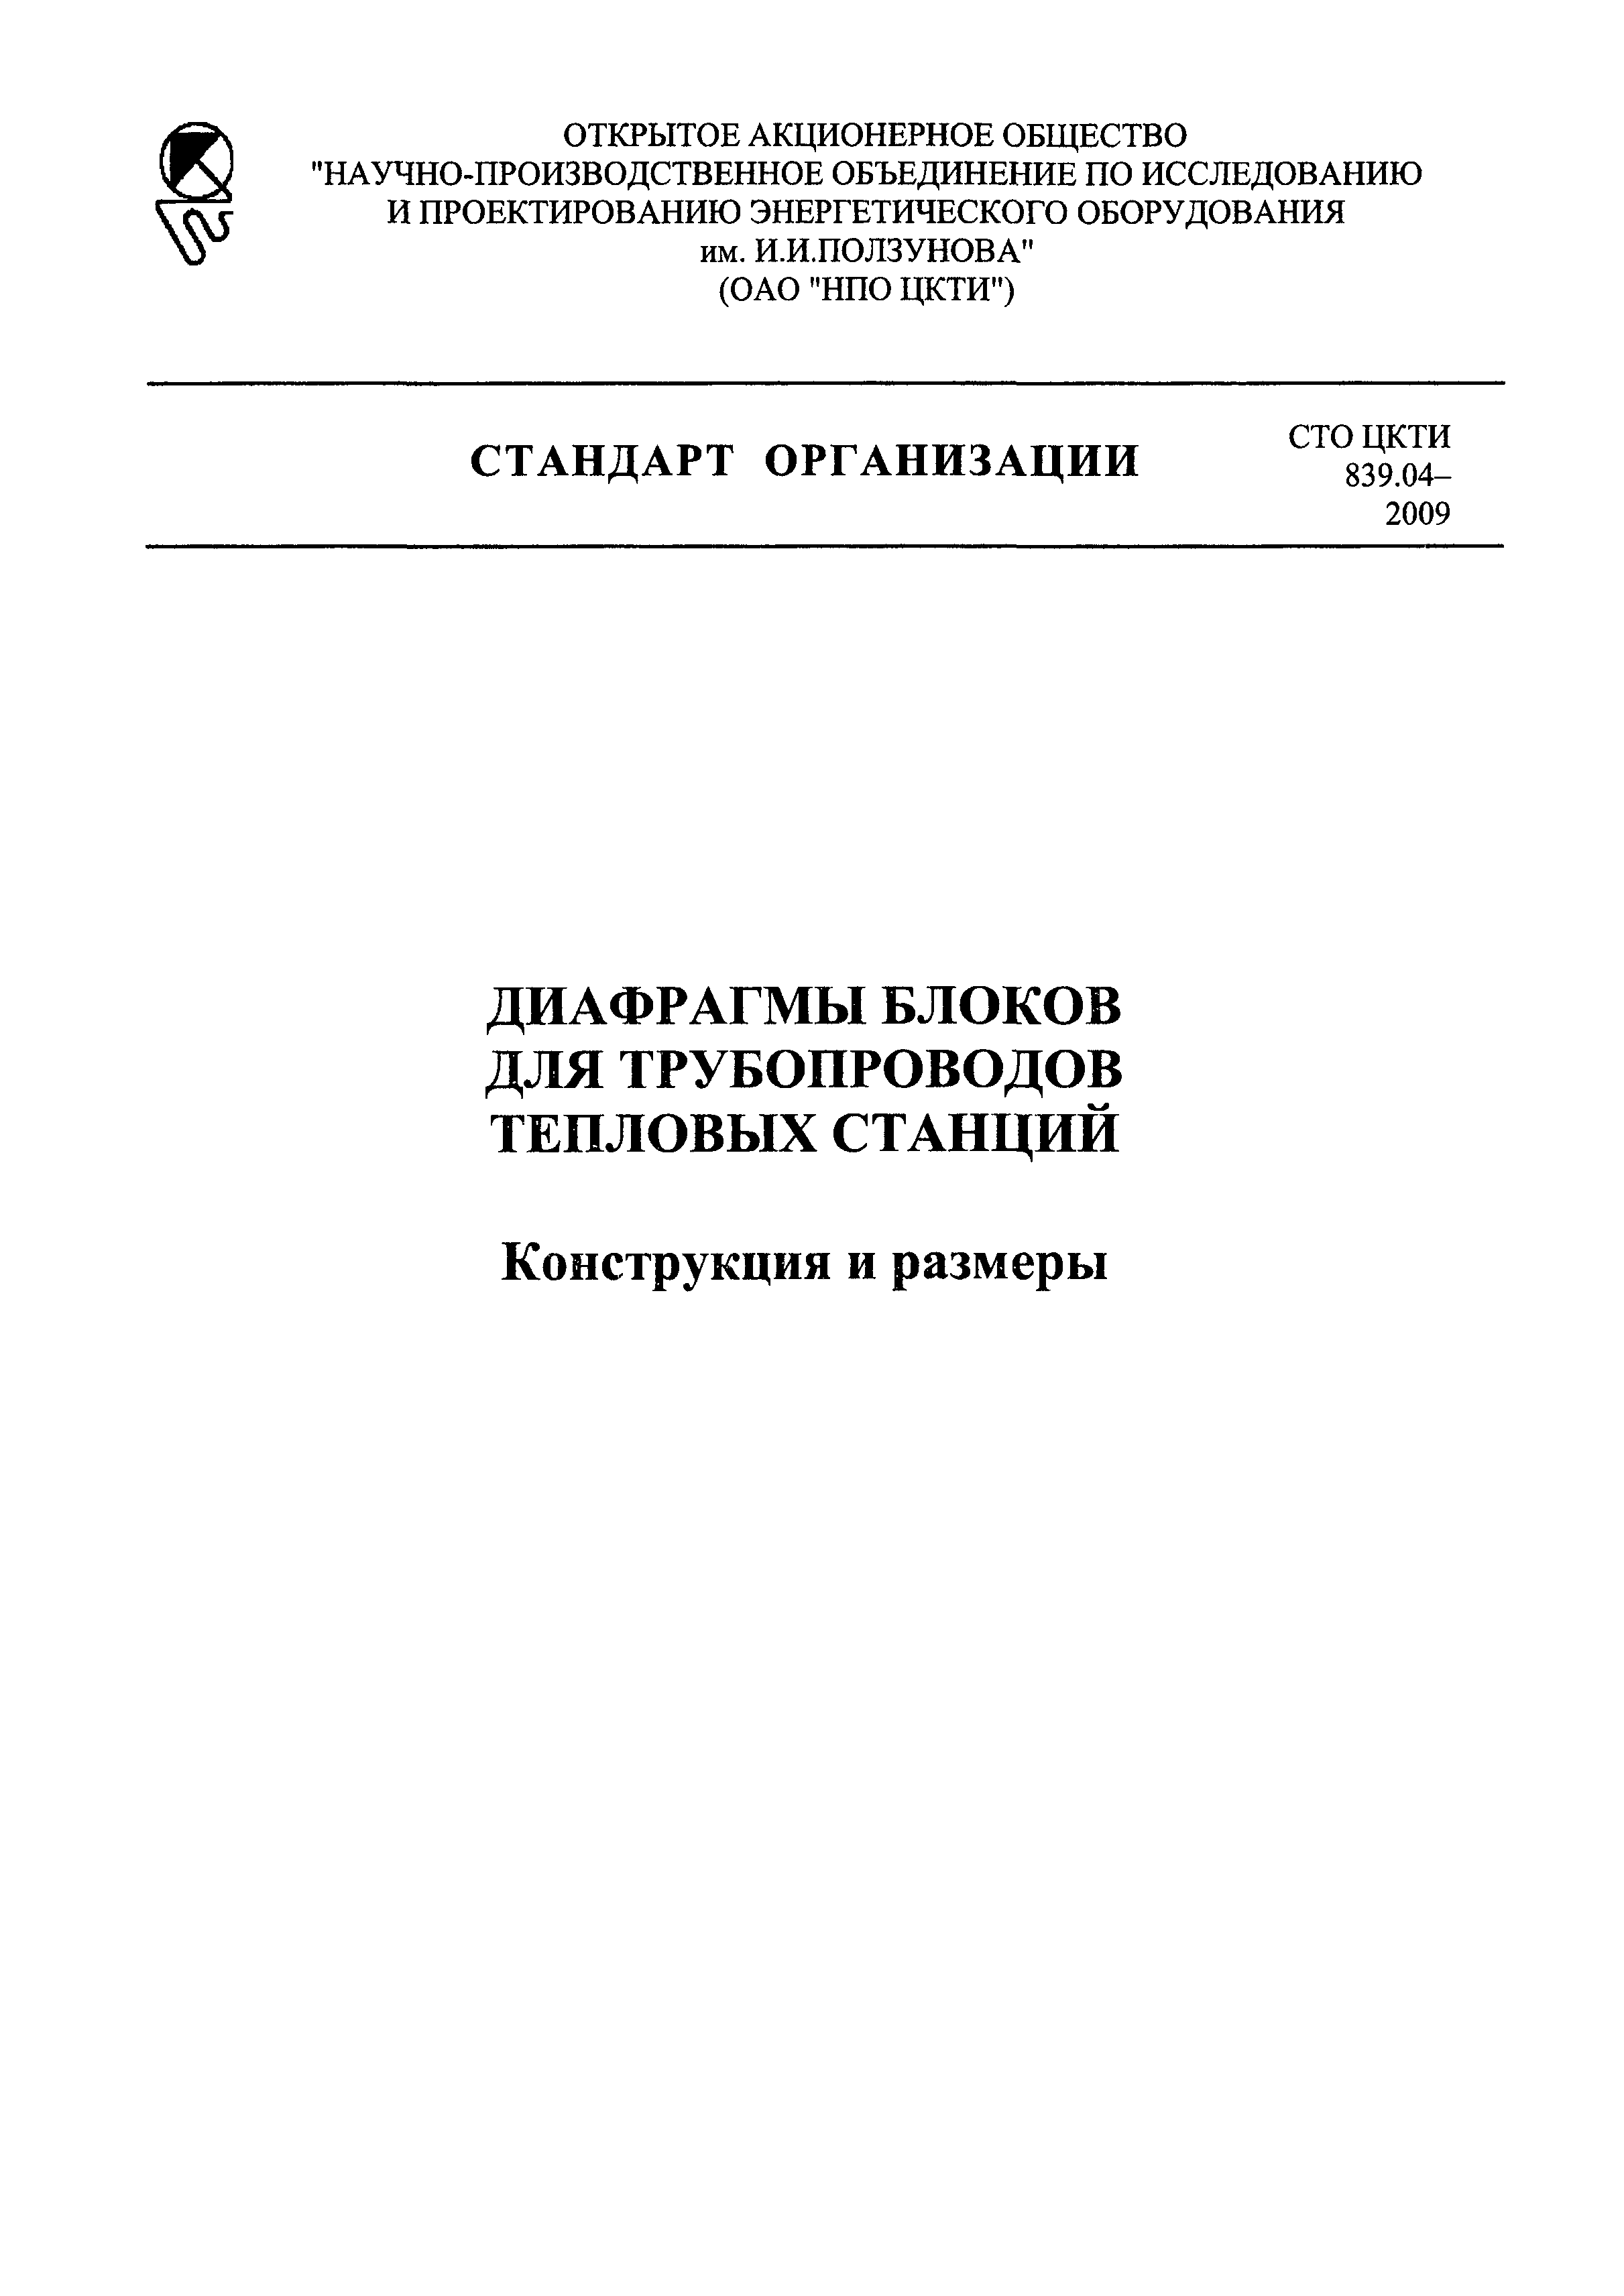 СТО ЦКТИ 839.04-2009